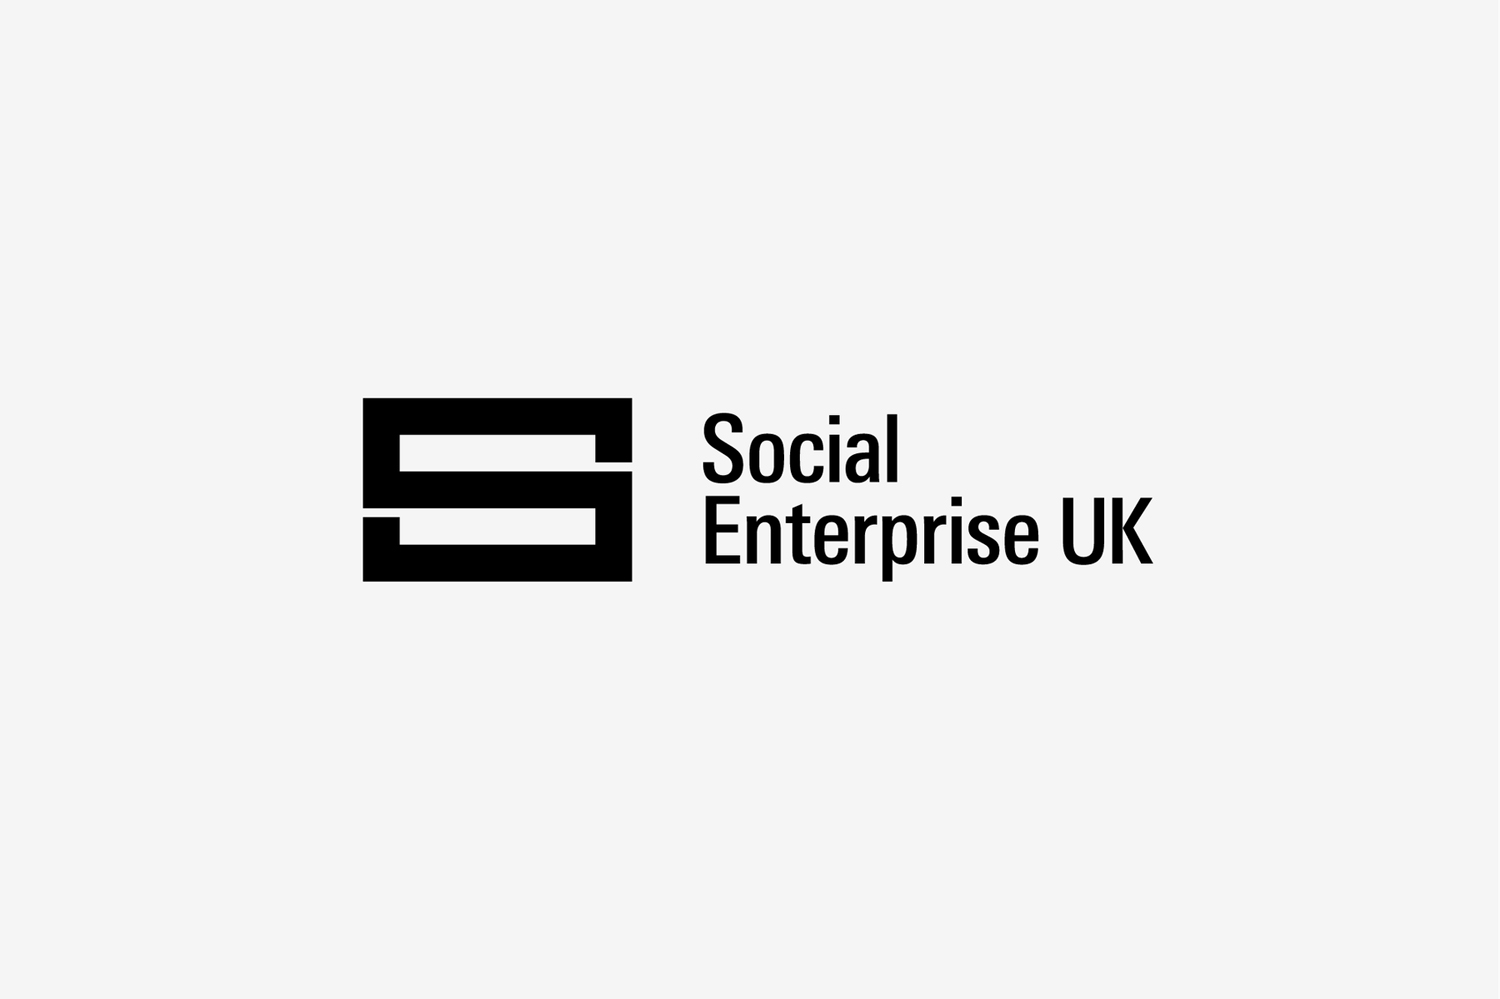 Logo for Social Enterprise UK by London based graphic design studio Paul Belford Ltd.